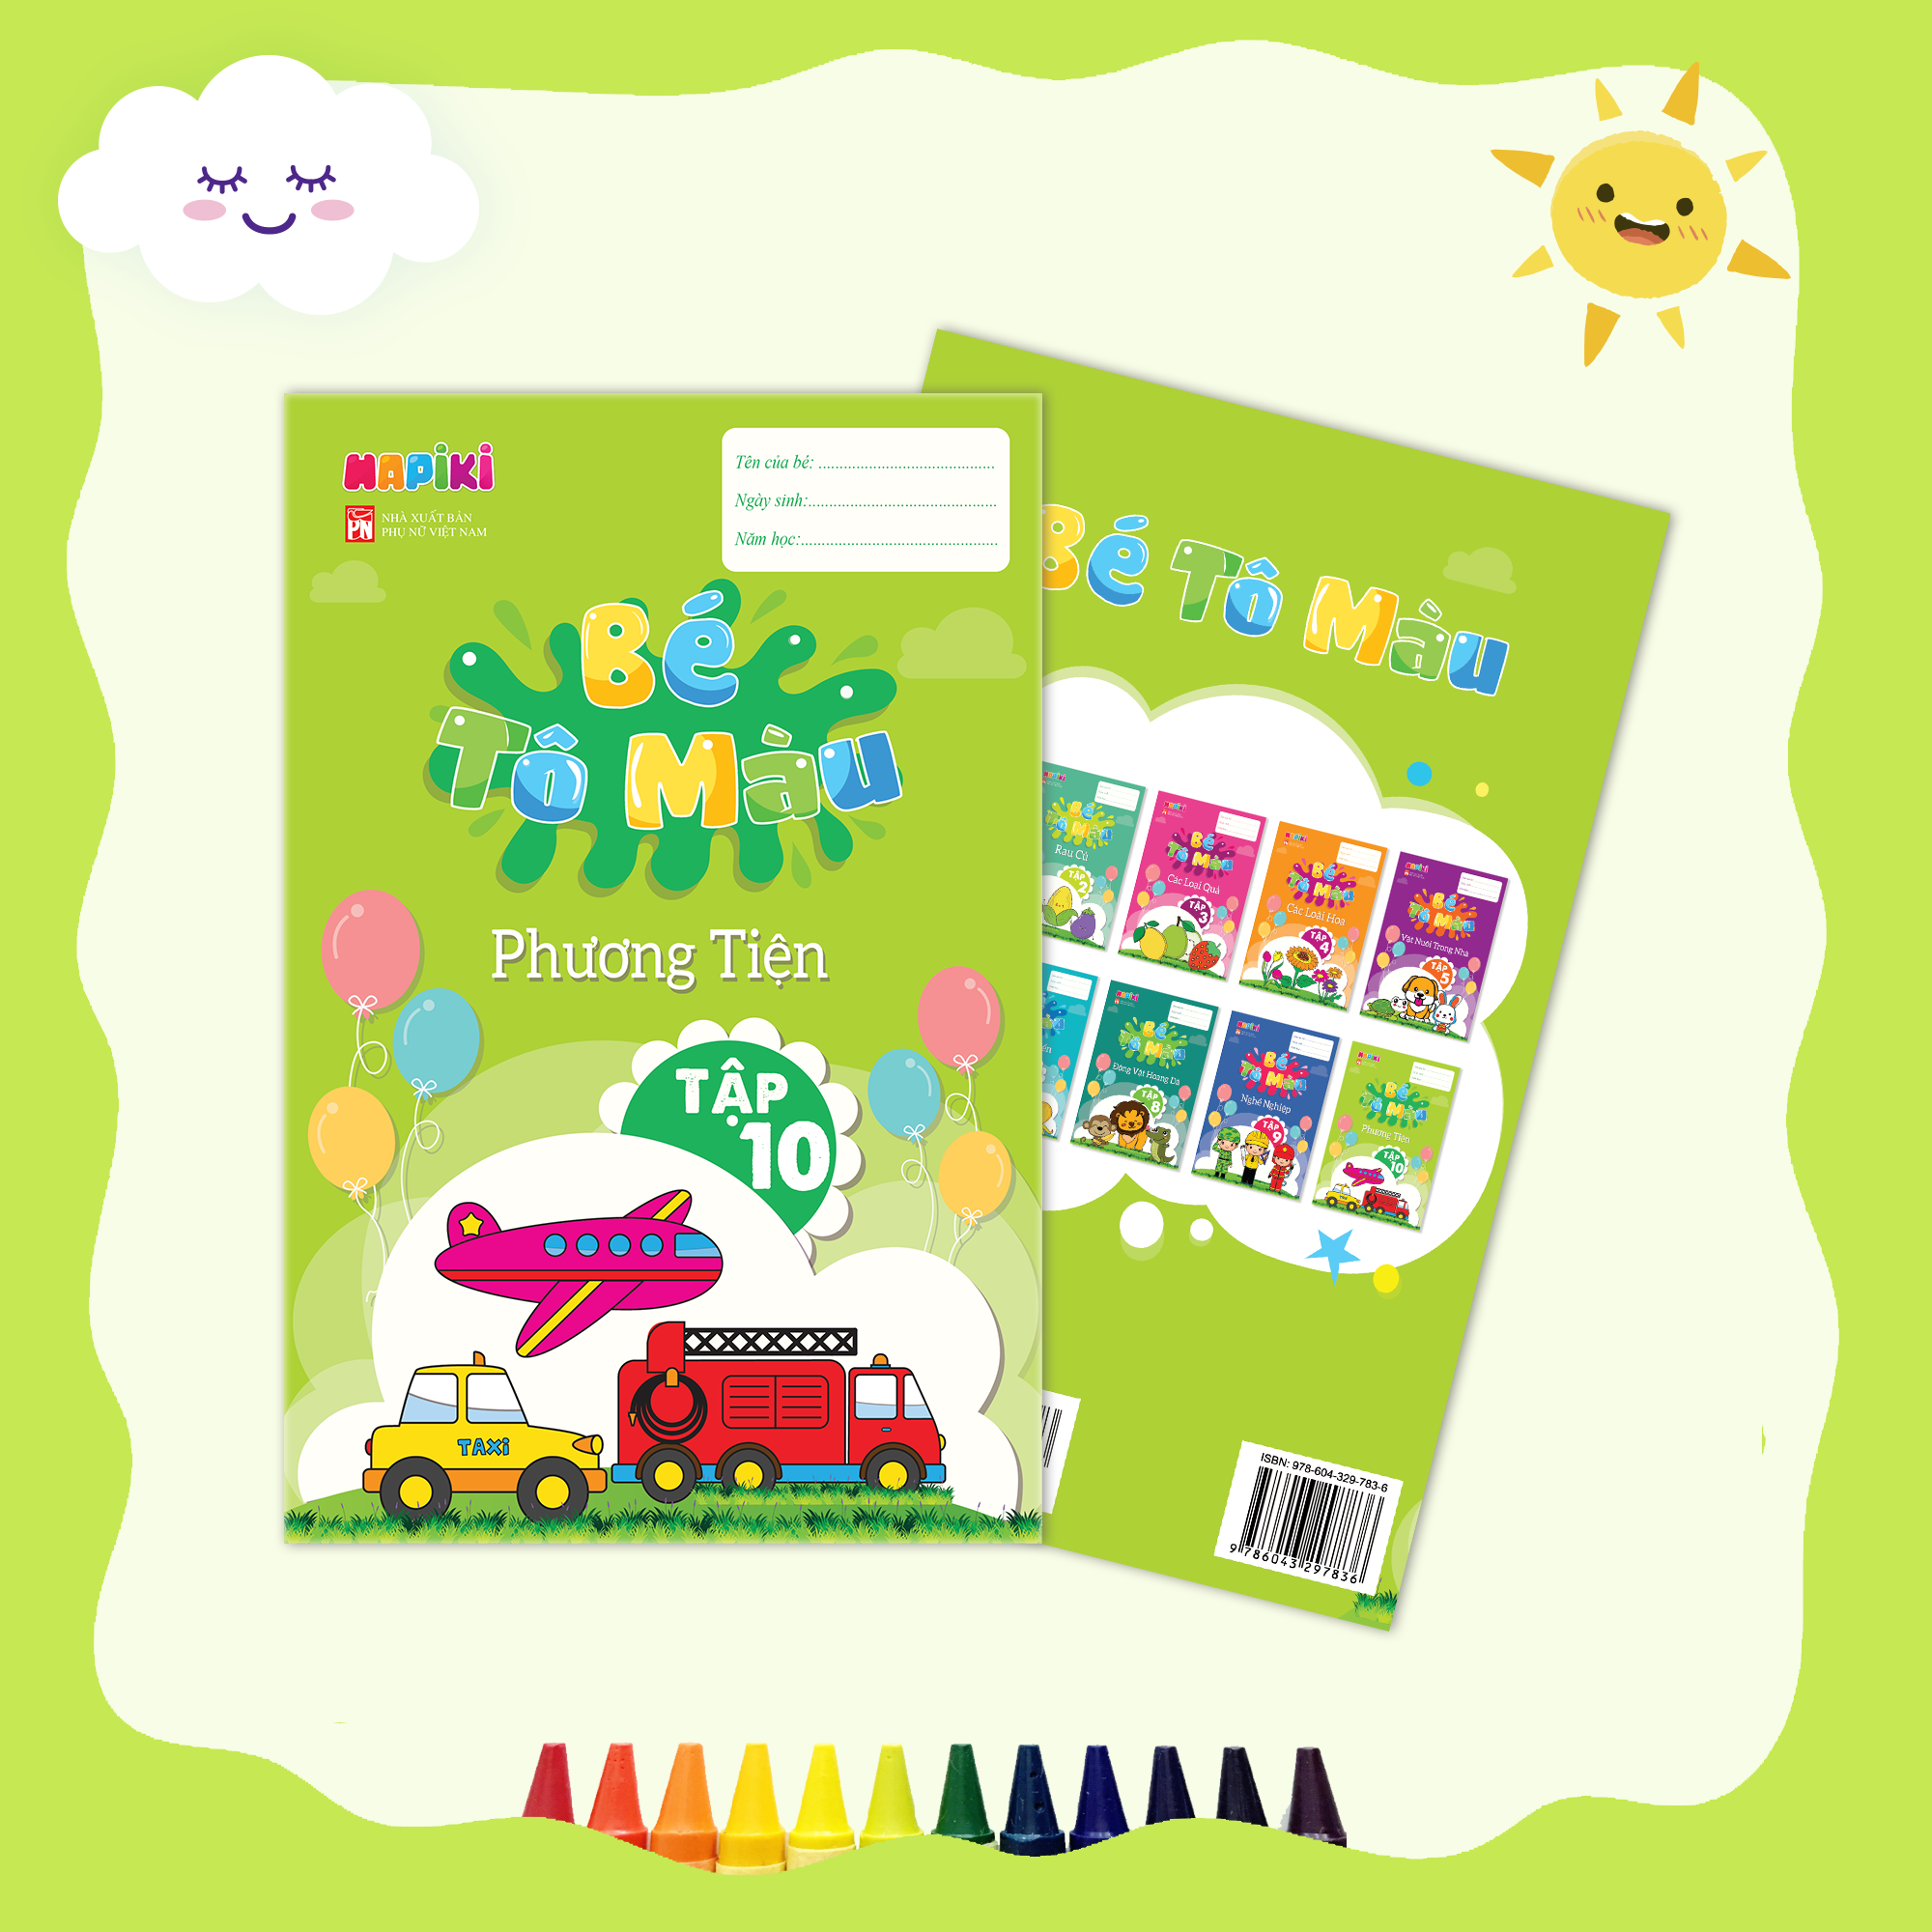 Sách tô màu chủ đề Phương tiện tập 10 - Cho cả bé trai, bé gái - 2 tuổi, 3 tuổi, 4 tuổi - Hapiki book